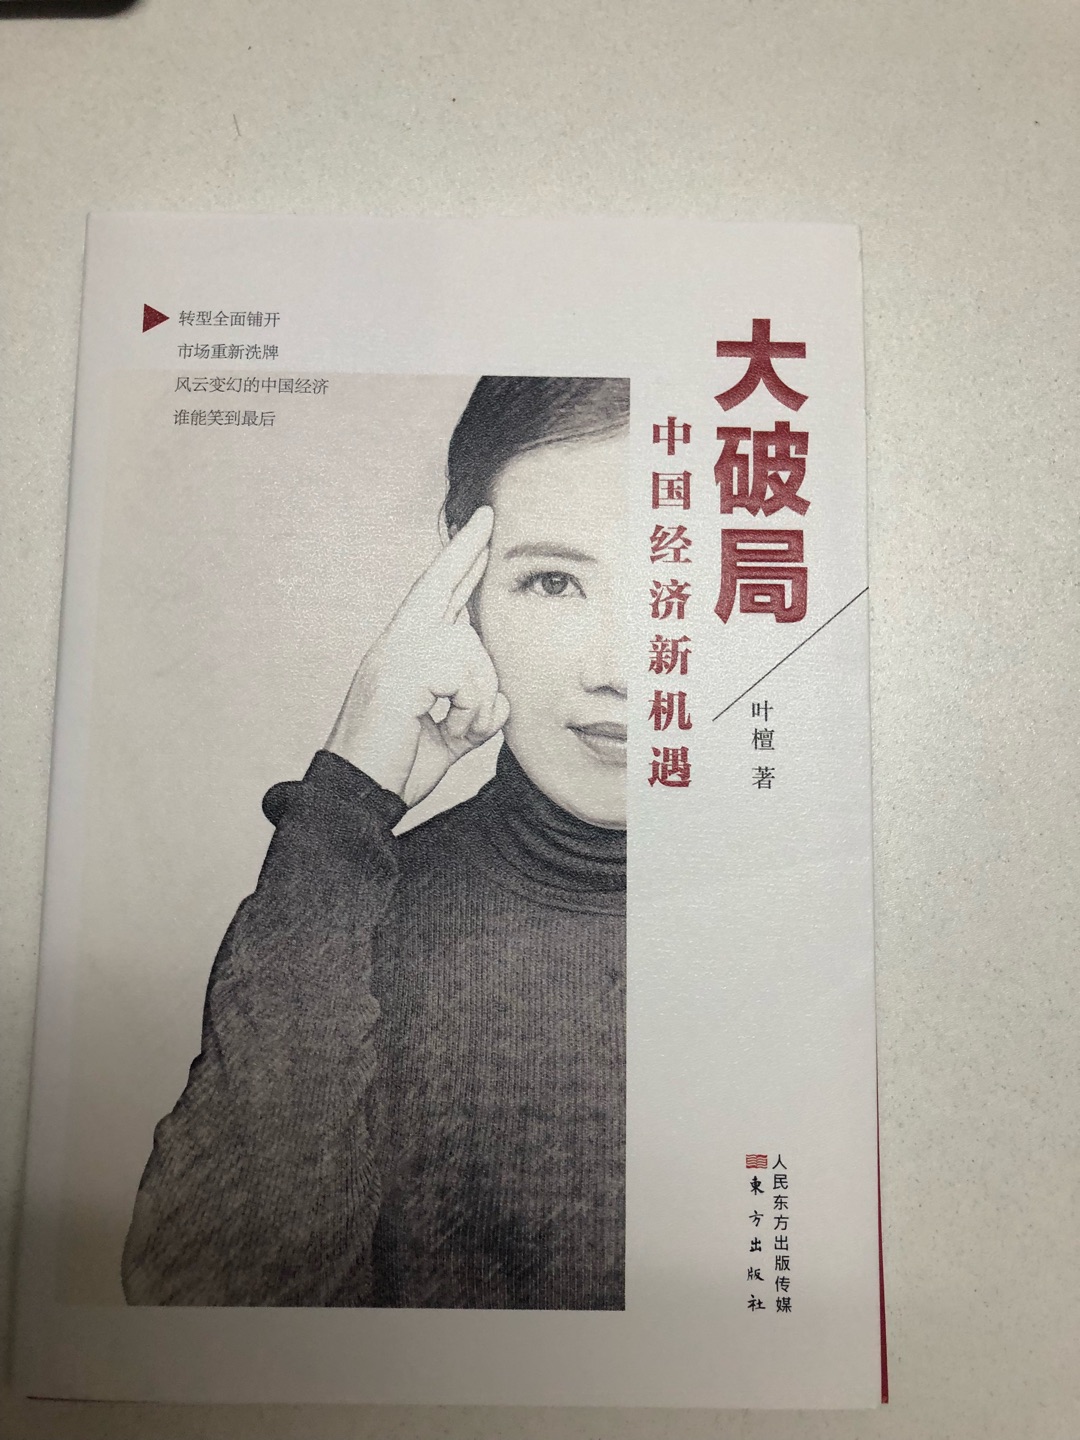 叶檀是当今知名的经济学者，这本书是她当今中国经济形势的分析，对经济的预测，从经济学角度告诉大家如何投资。